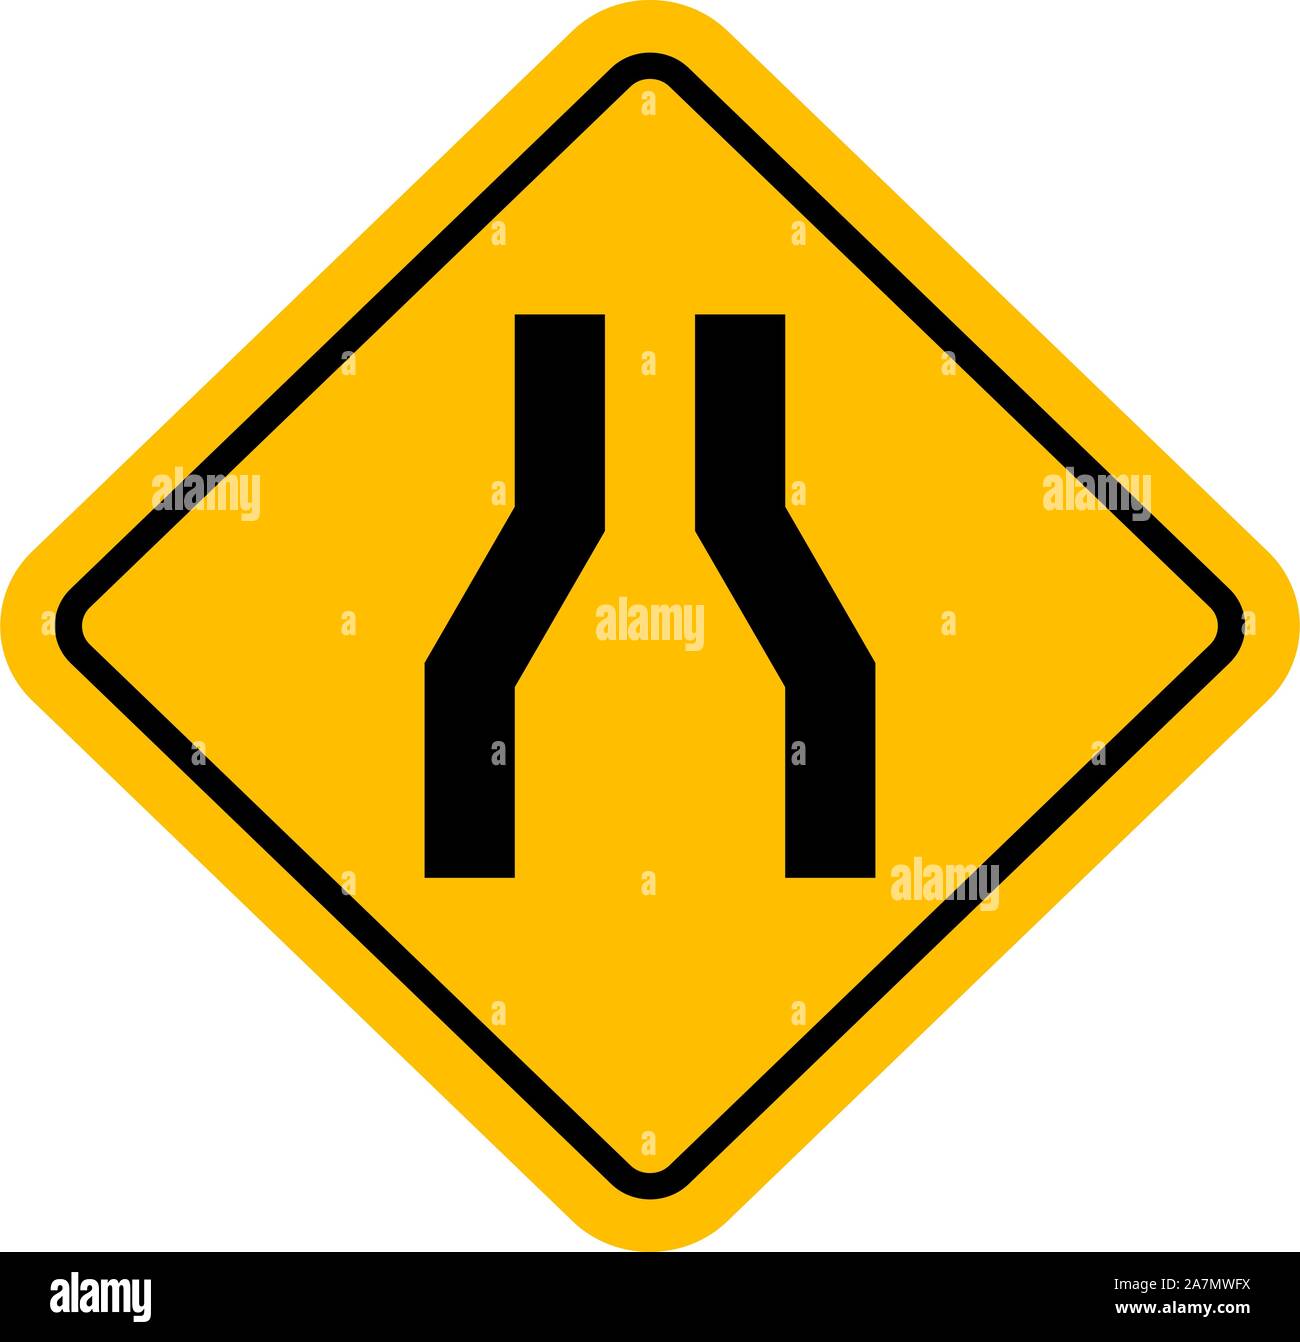 Señal de tráfico angosta carretera ilustración vectorial. Perfecto para los fondos, etiqueta, etiqueta, símbolo, signo, etc. Ilustración del Vector